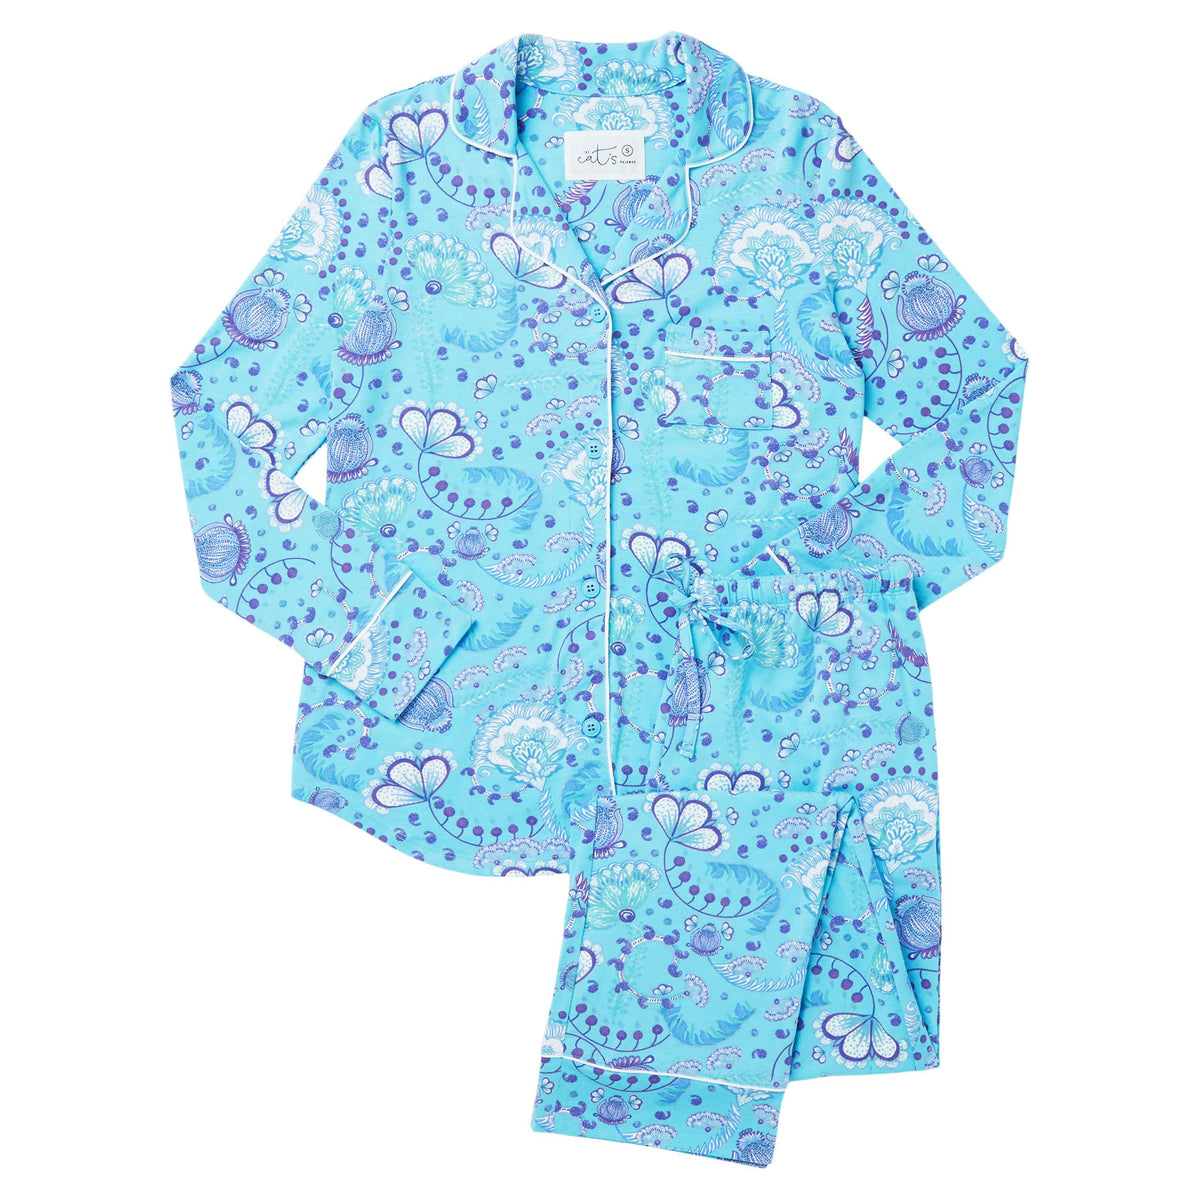 Simple Stripe Pima Knit Nightgown – The Cat's Pajamas